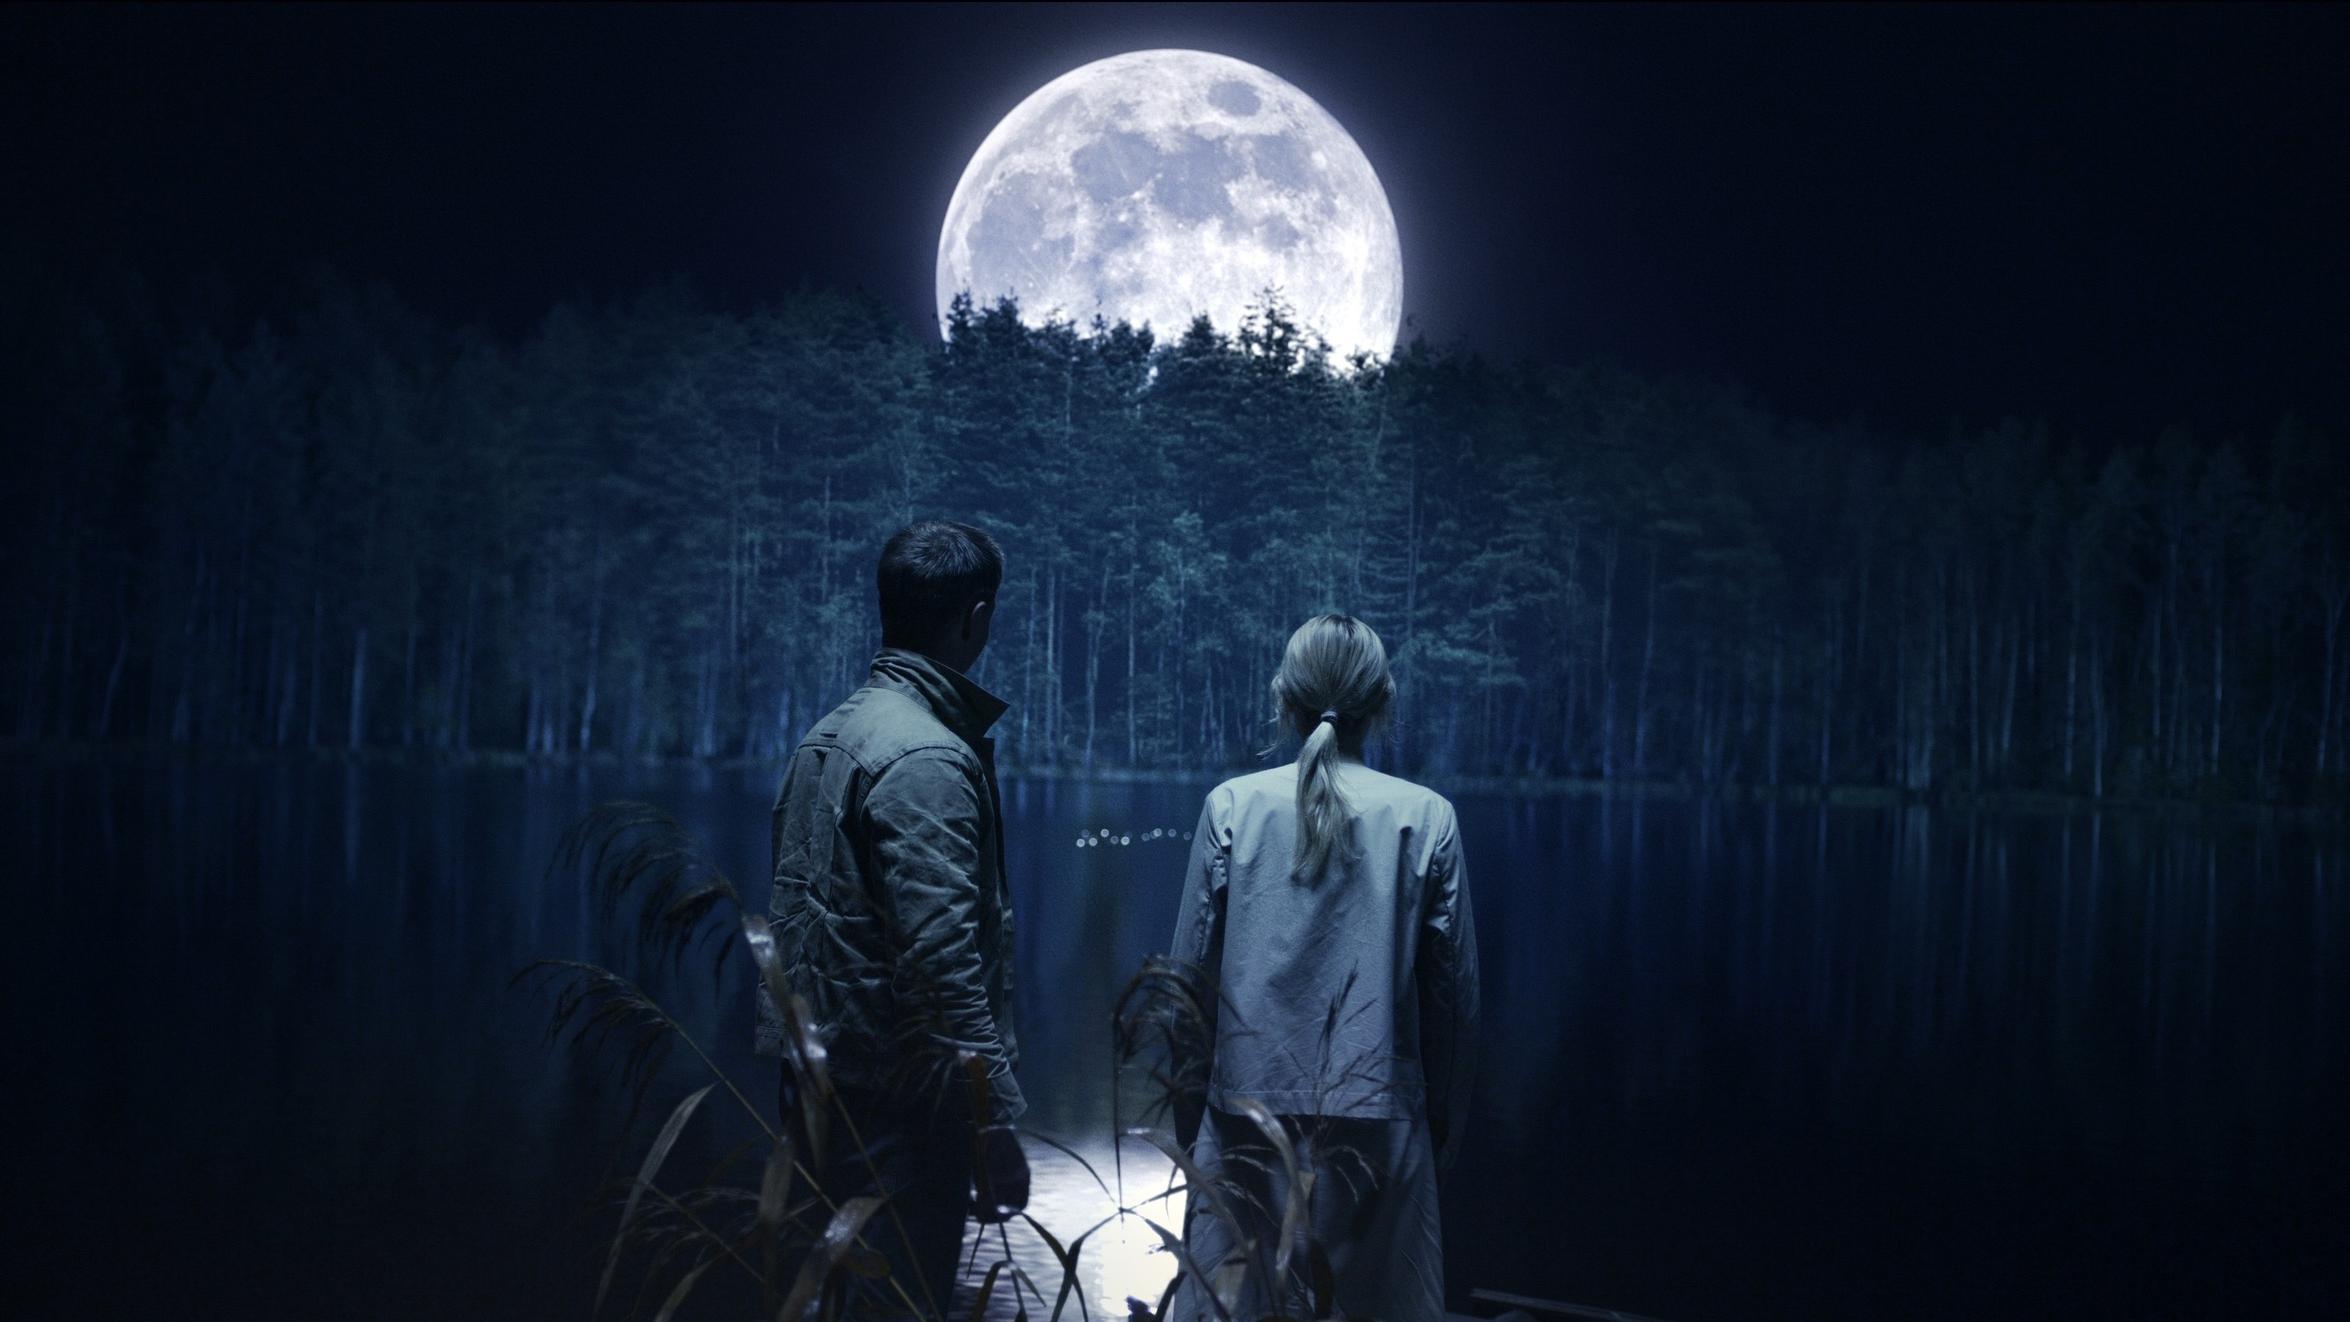 Глеб Кащеев: Самая большая луна. Испытание чувствами